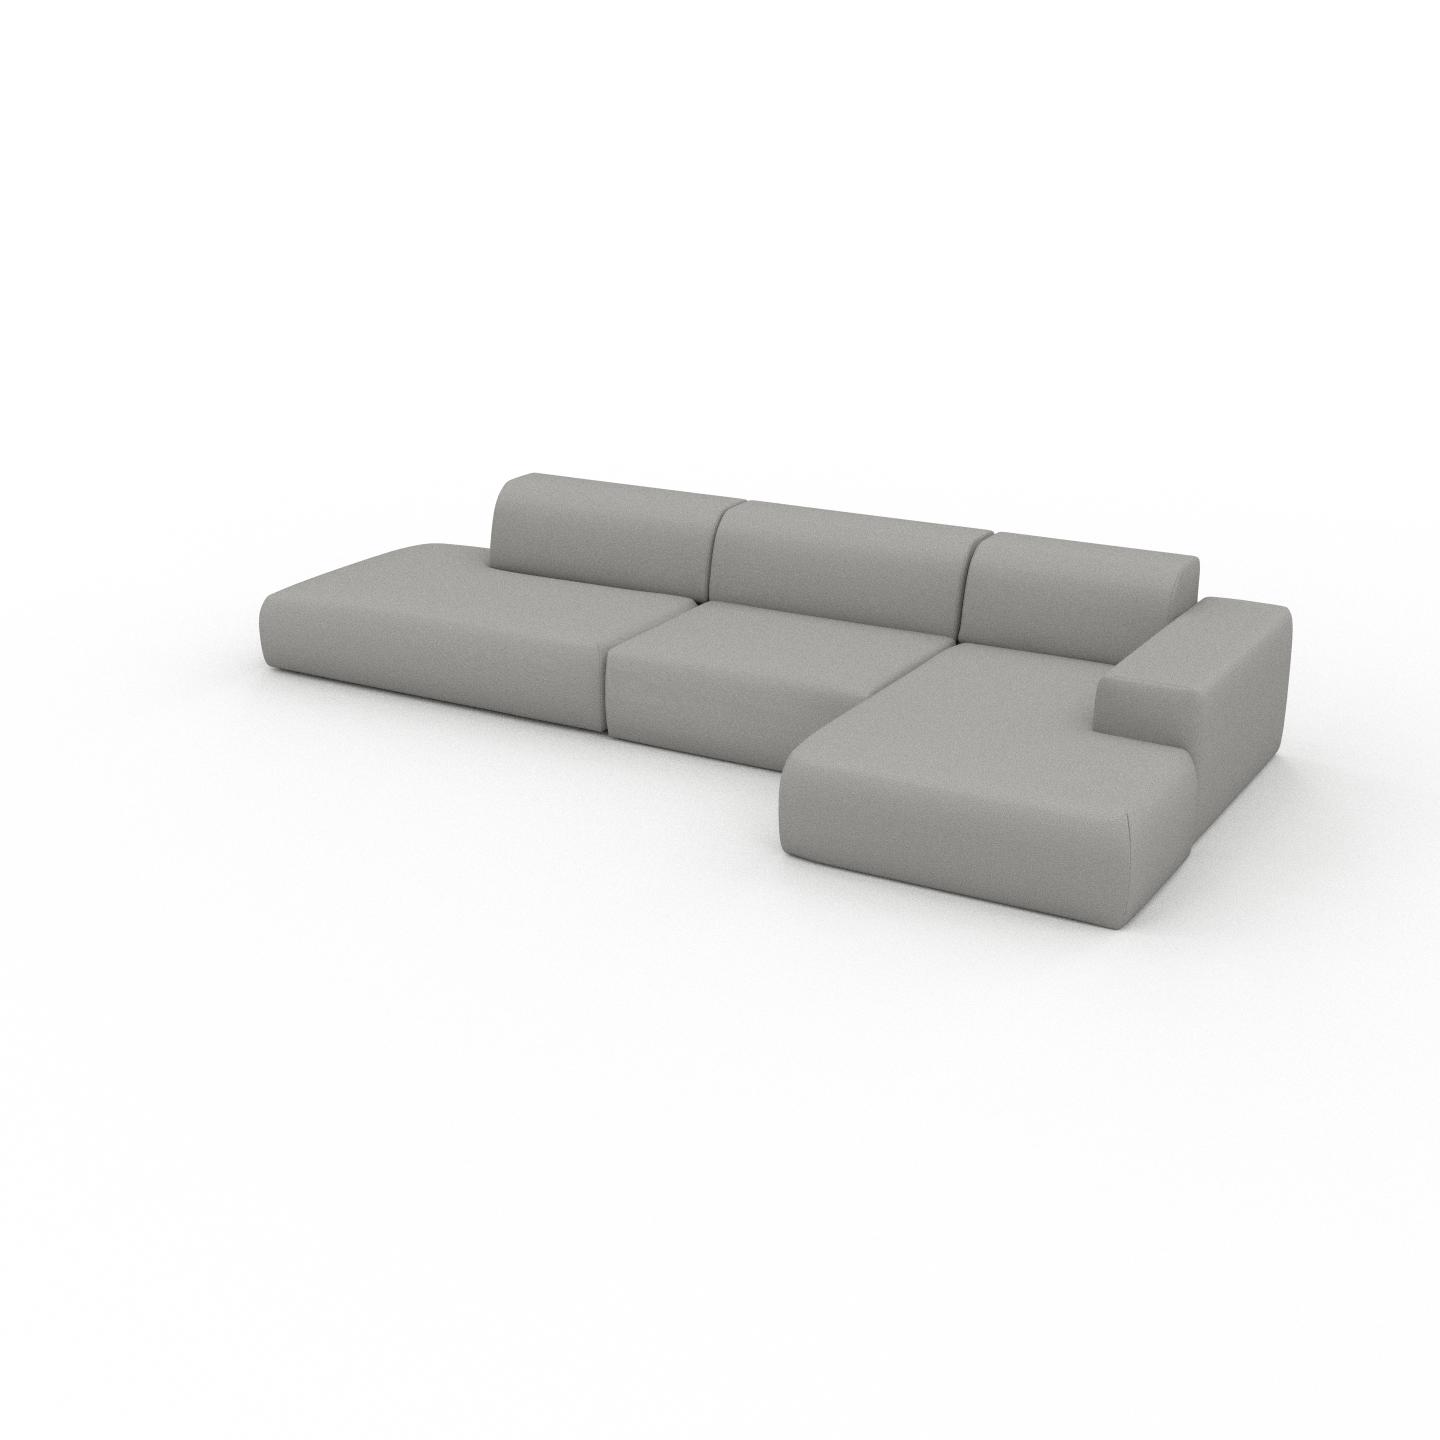 MYCS Ecksofa Sandgrau - Flexible Designer-Polsterecke, L-Form: Beste Qualität, einzigartiges Design - 371 x 72 x 168 cm, konfigurierbar